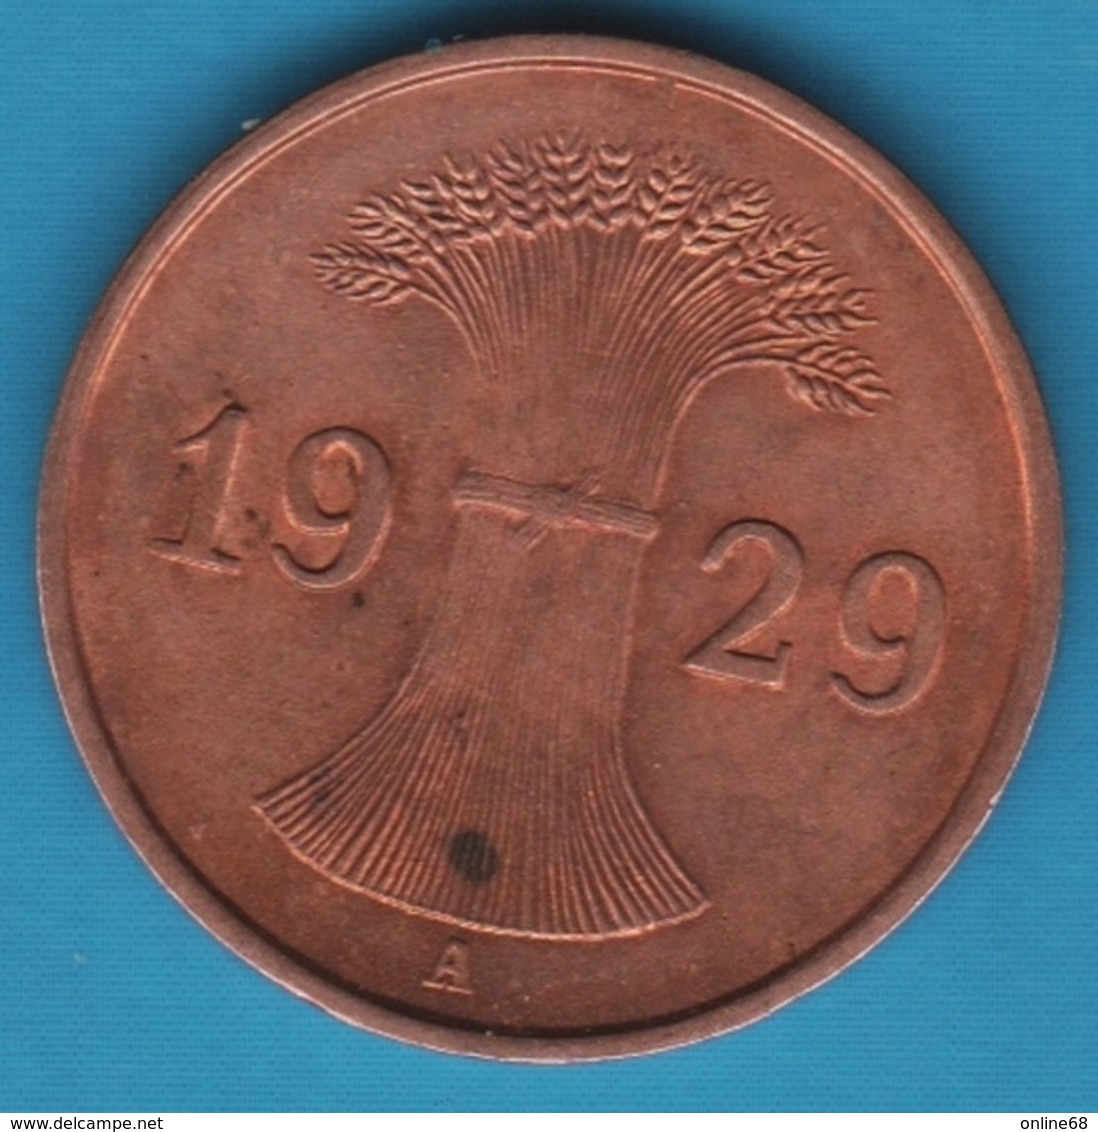 DEUTSCHES REICH 1 Reichspfennig 1929 A KM# 37 - 1 Rentenpfennig & 1 Reichspfennig